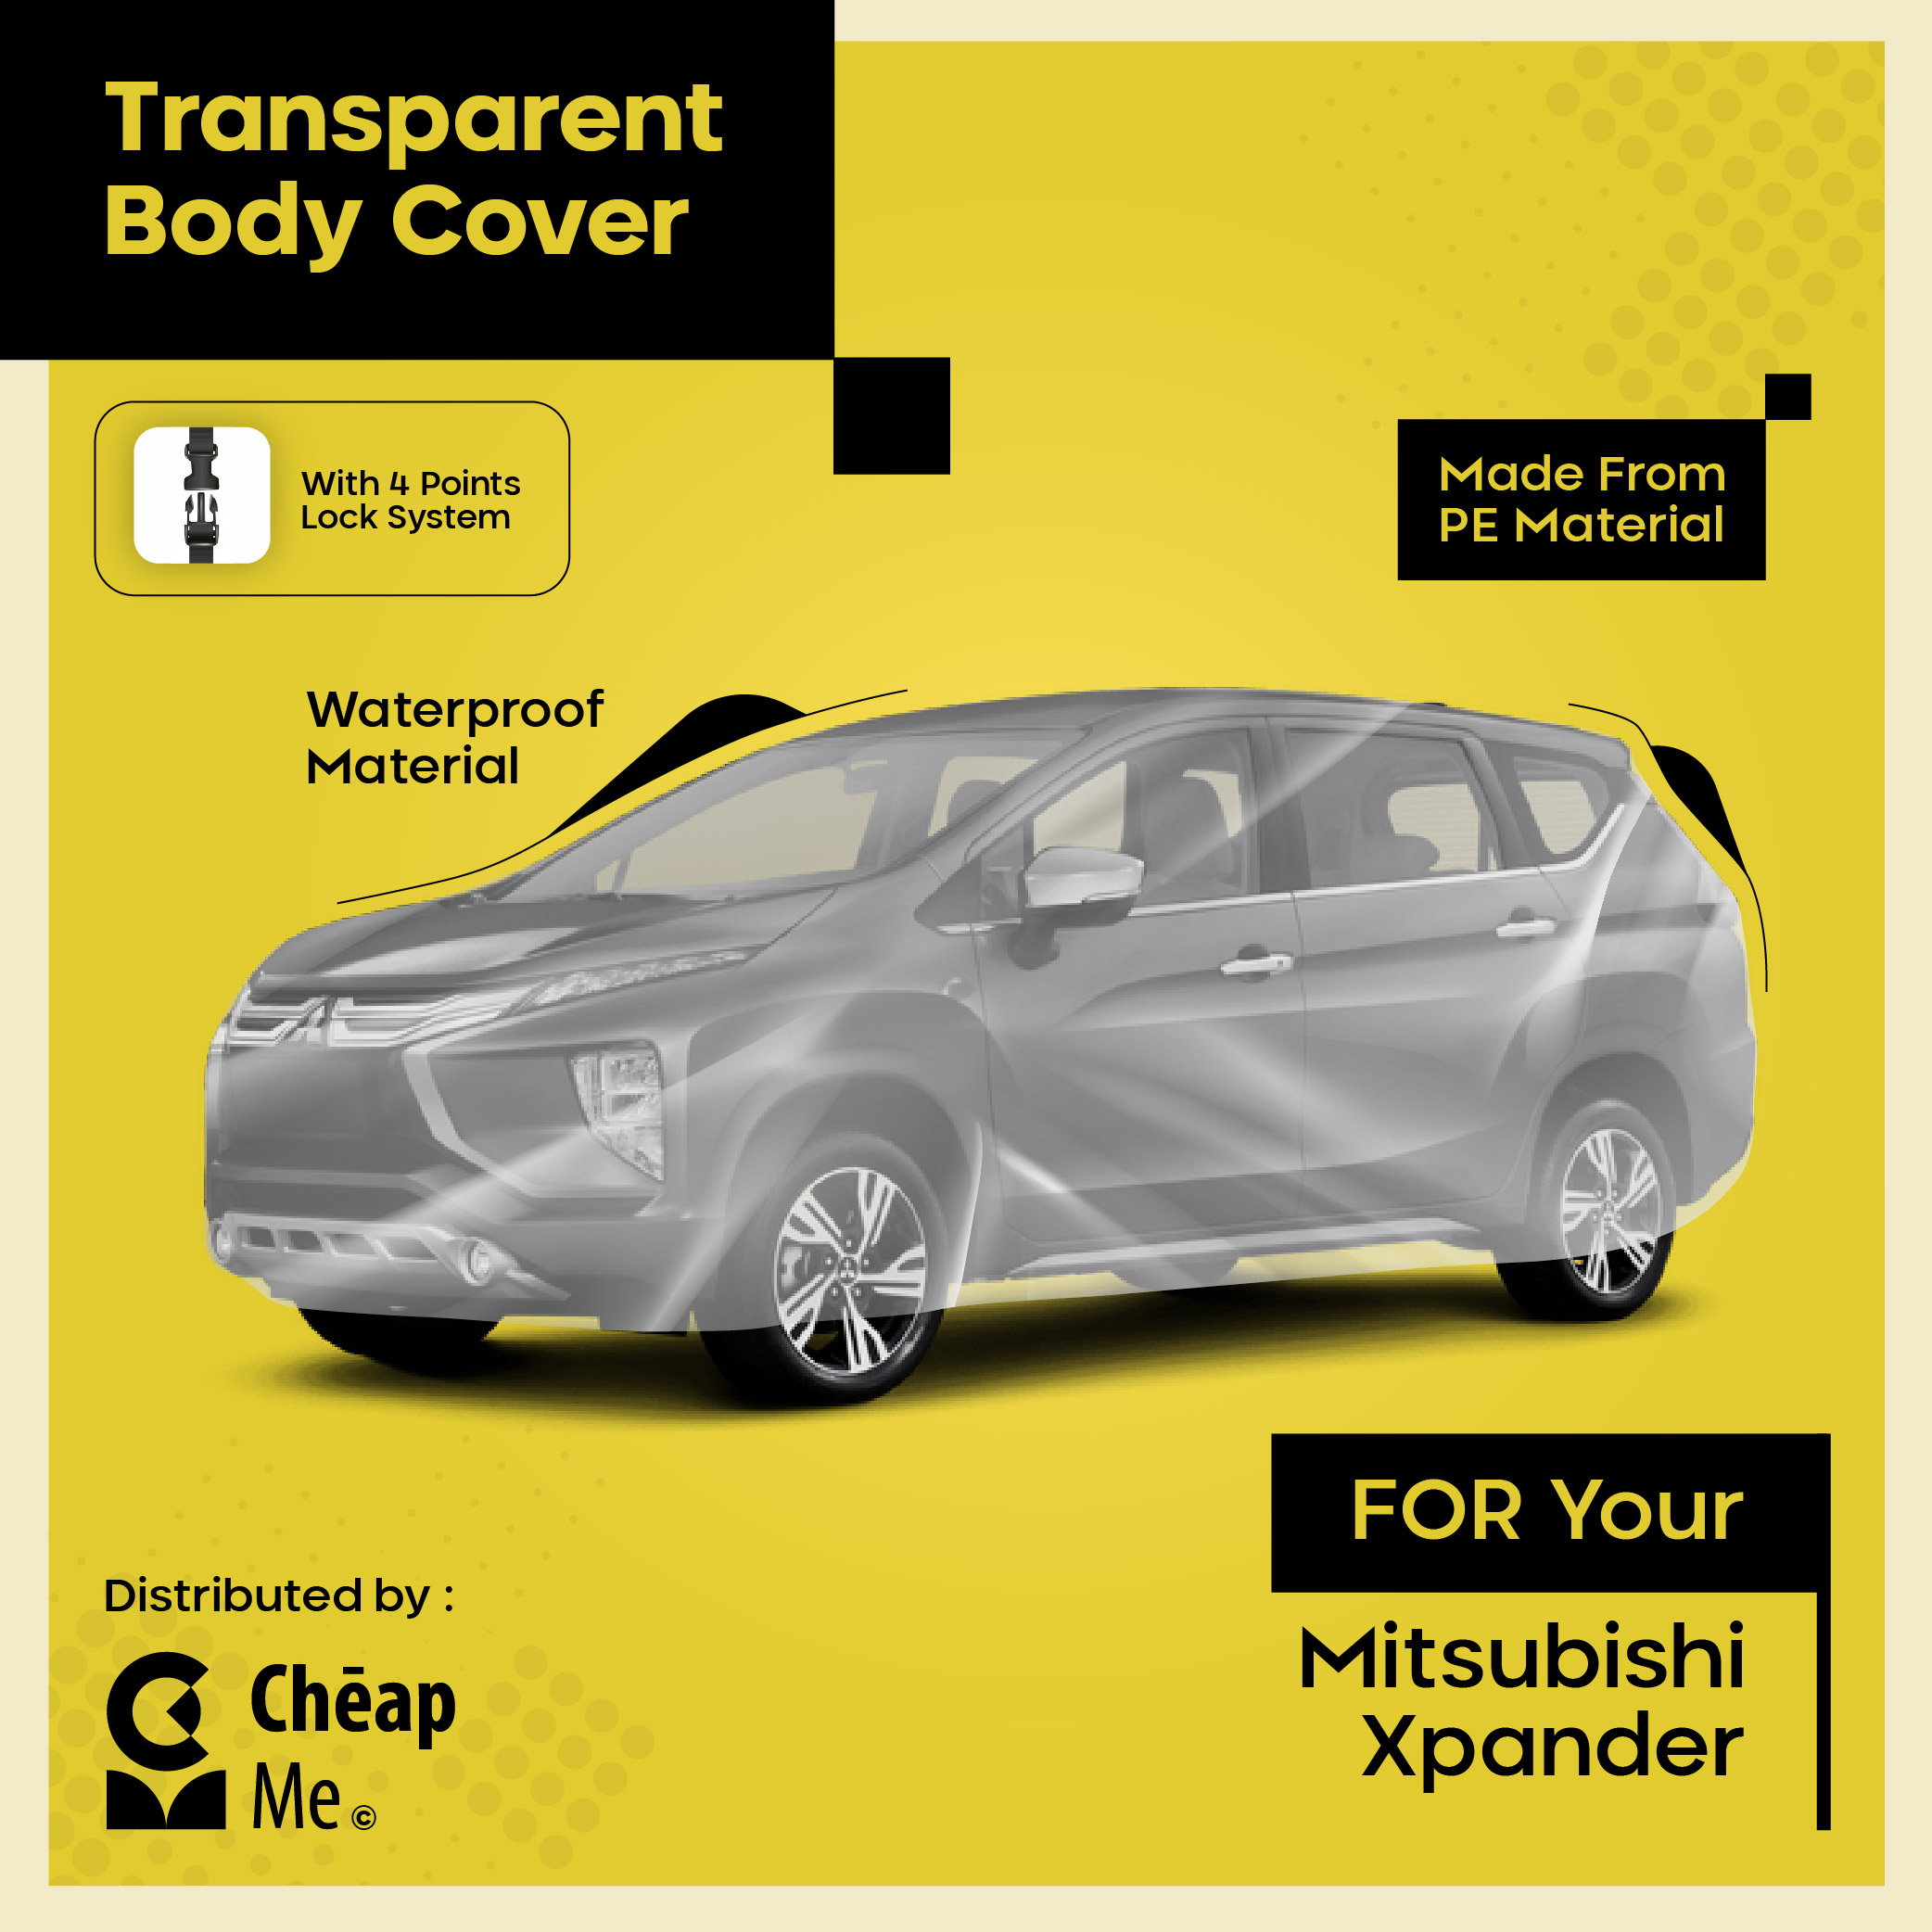 Sarung Mobil XPANDER Cover Mobil Murah XPANDER CROSS Body Cover Transparant TEBAL Car Cover WATERPROOF